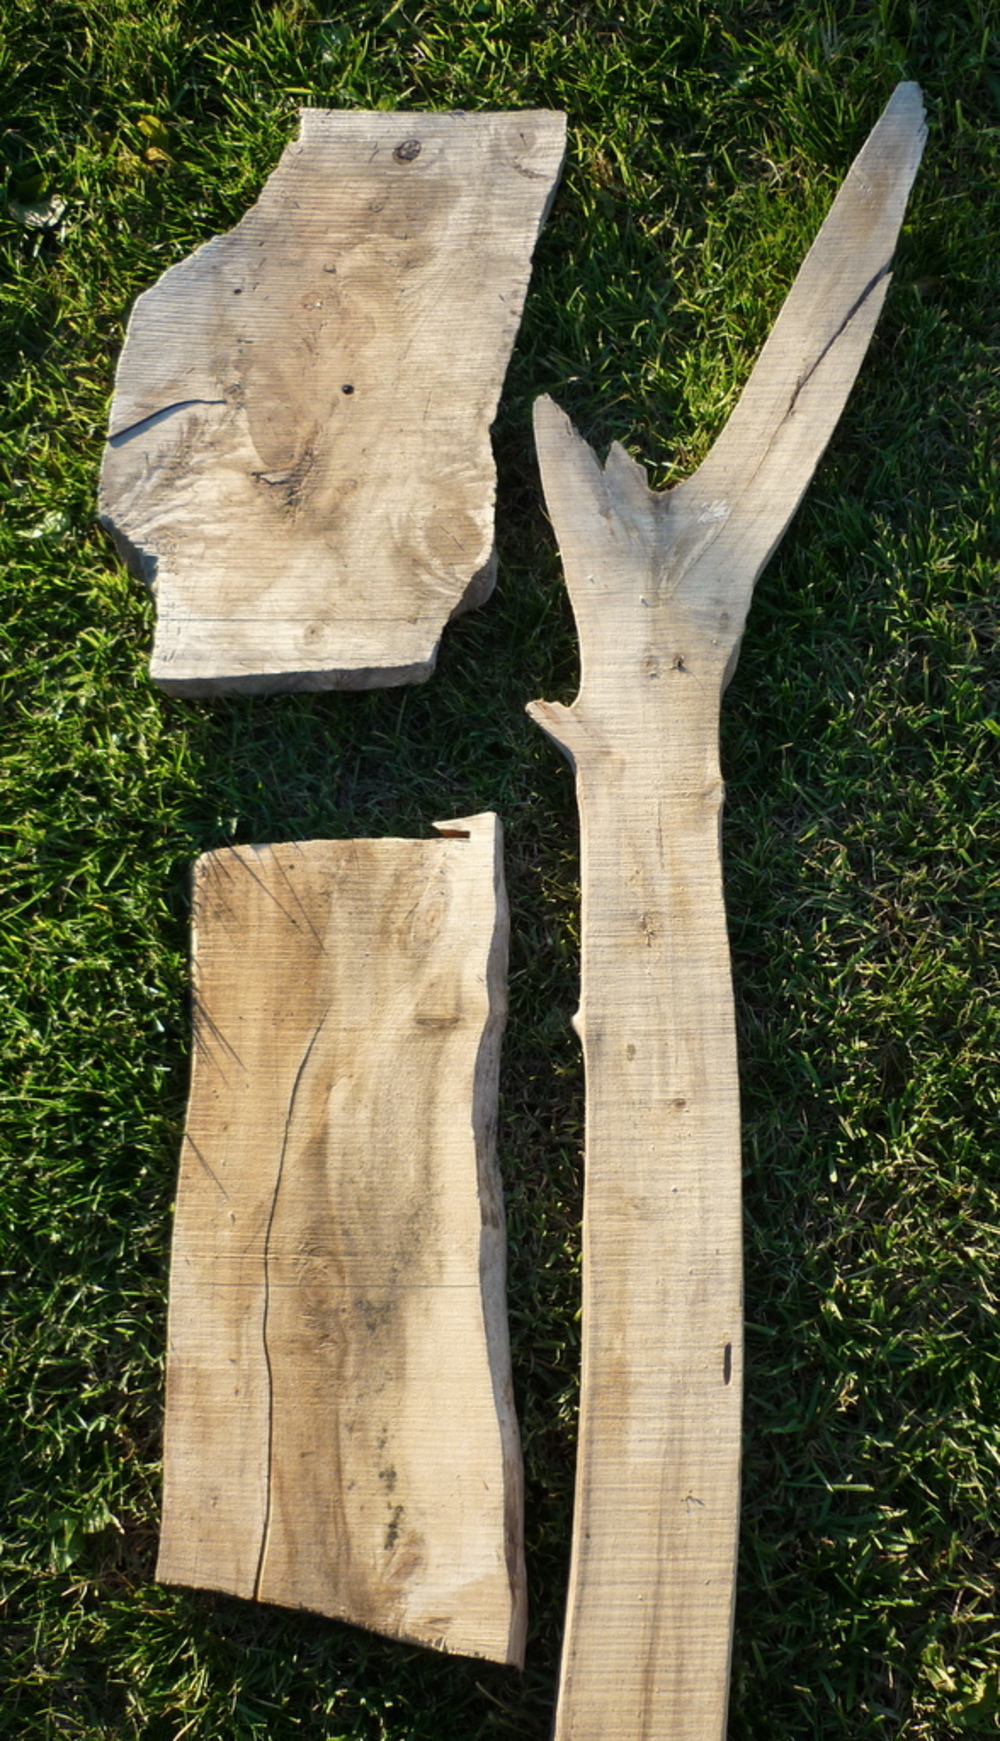 Vente de planches en bois flotté